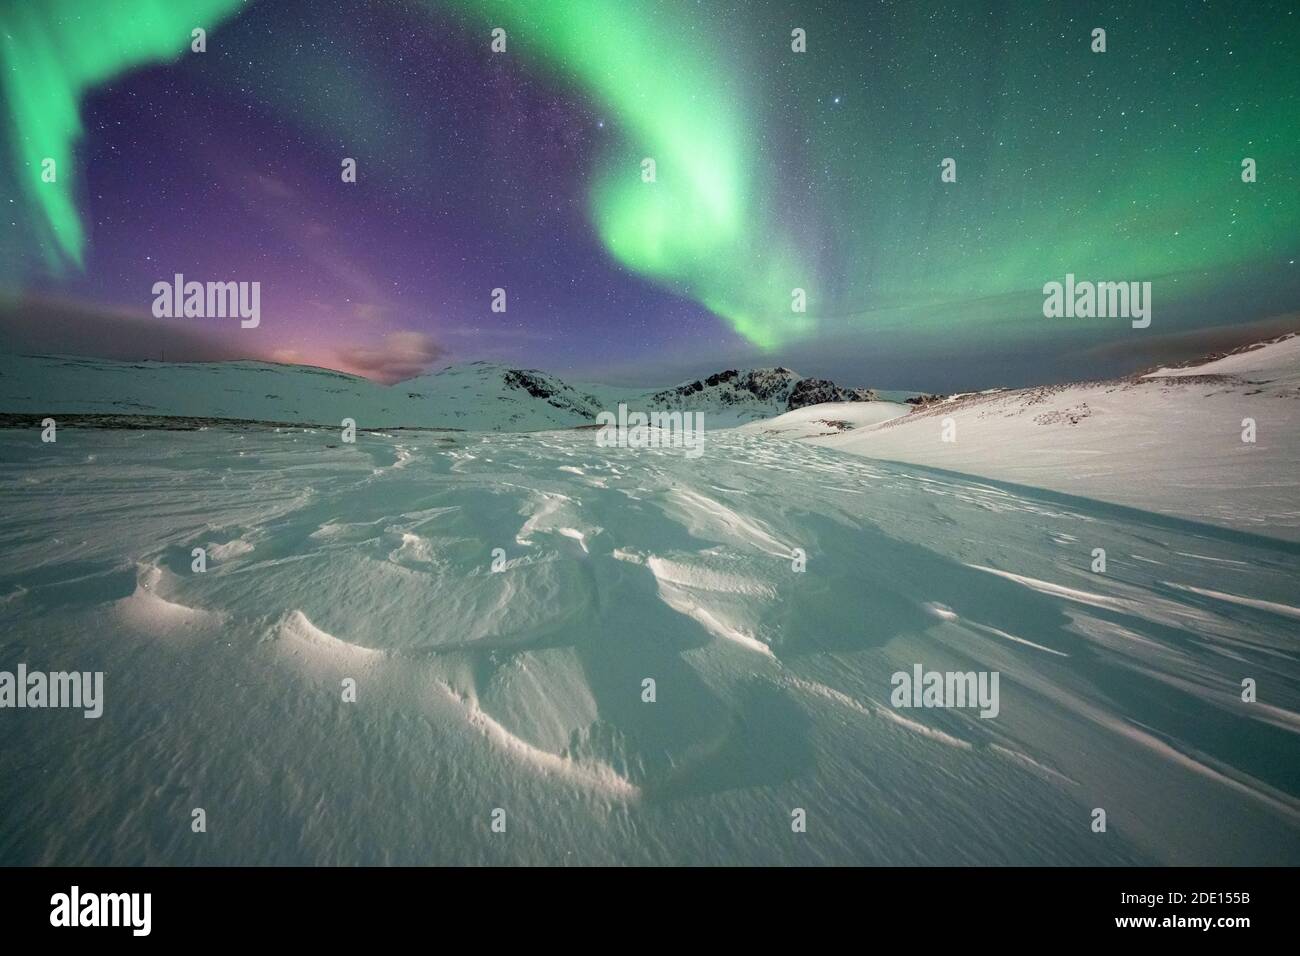 Neige gelée éclairée par les lumières vertes des aurores boréales (Aurora Borealis) dans la nuit froide de l'Arctique, île de Mageroya, Nordkapp, Norvège Banque D'Images